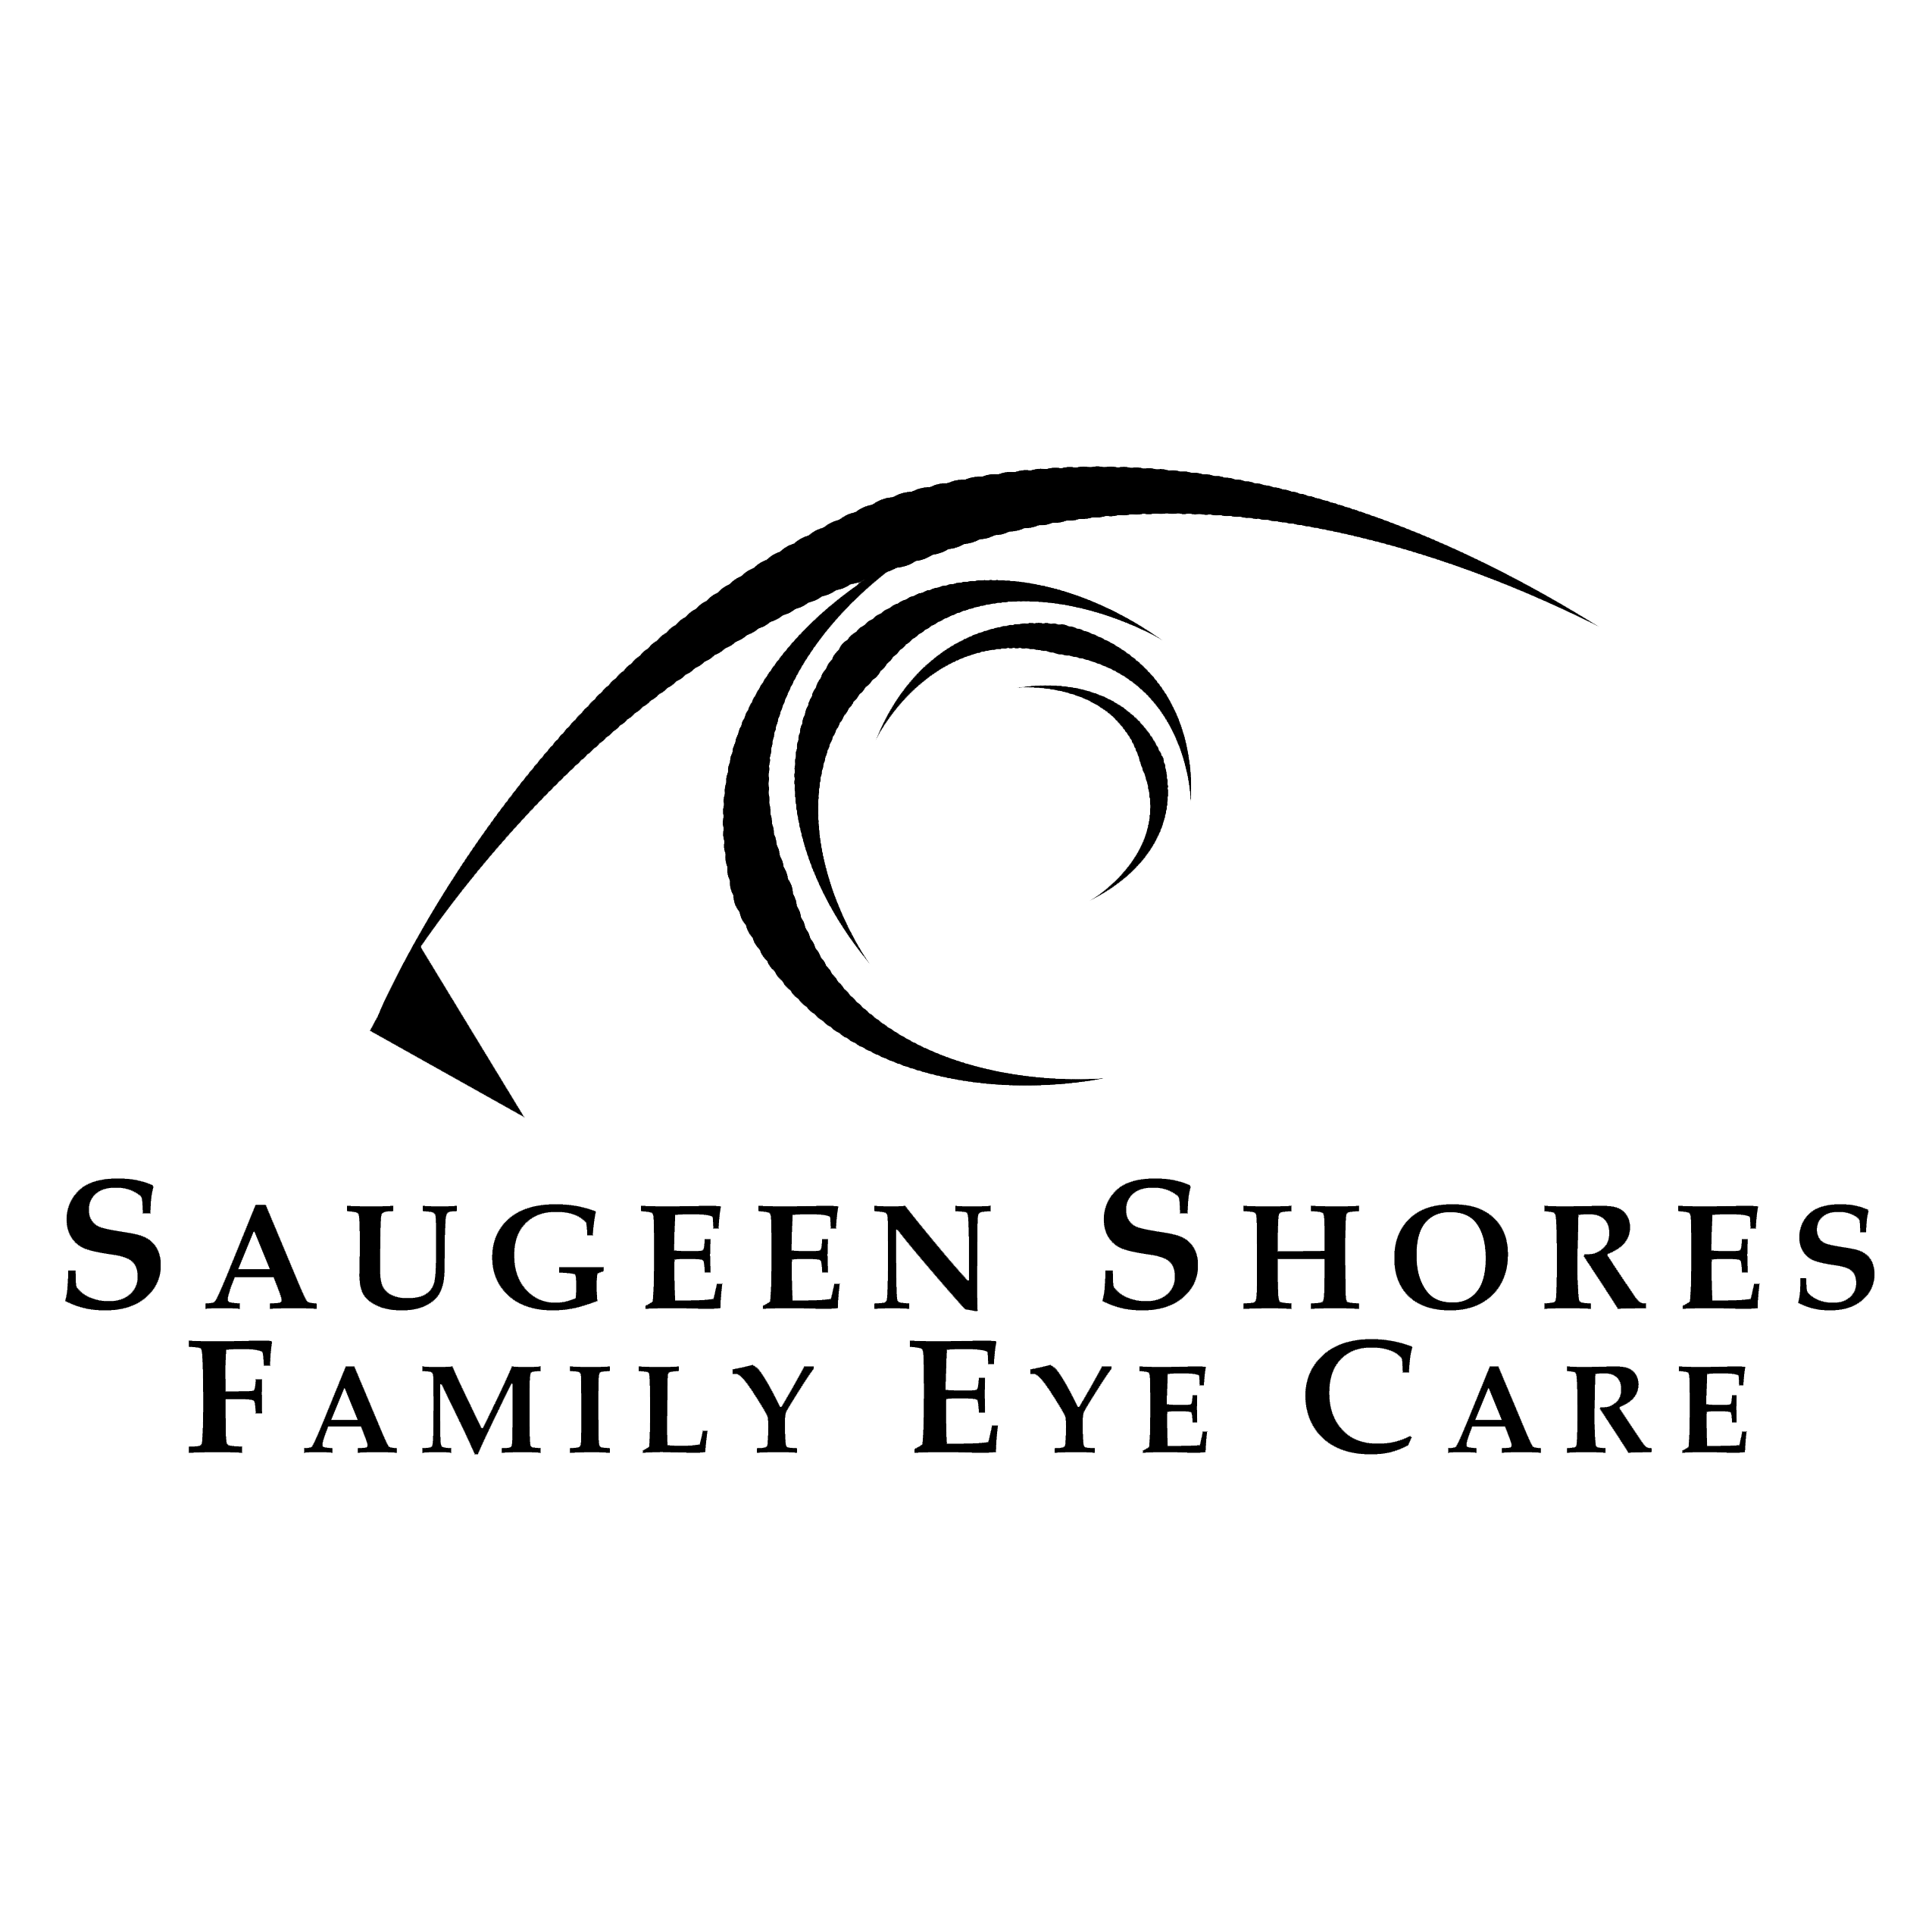 Saugeen Shores Family Eye Care